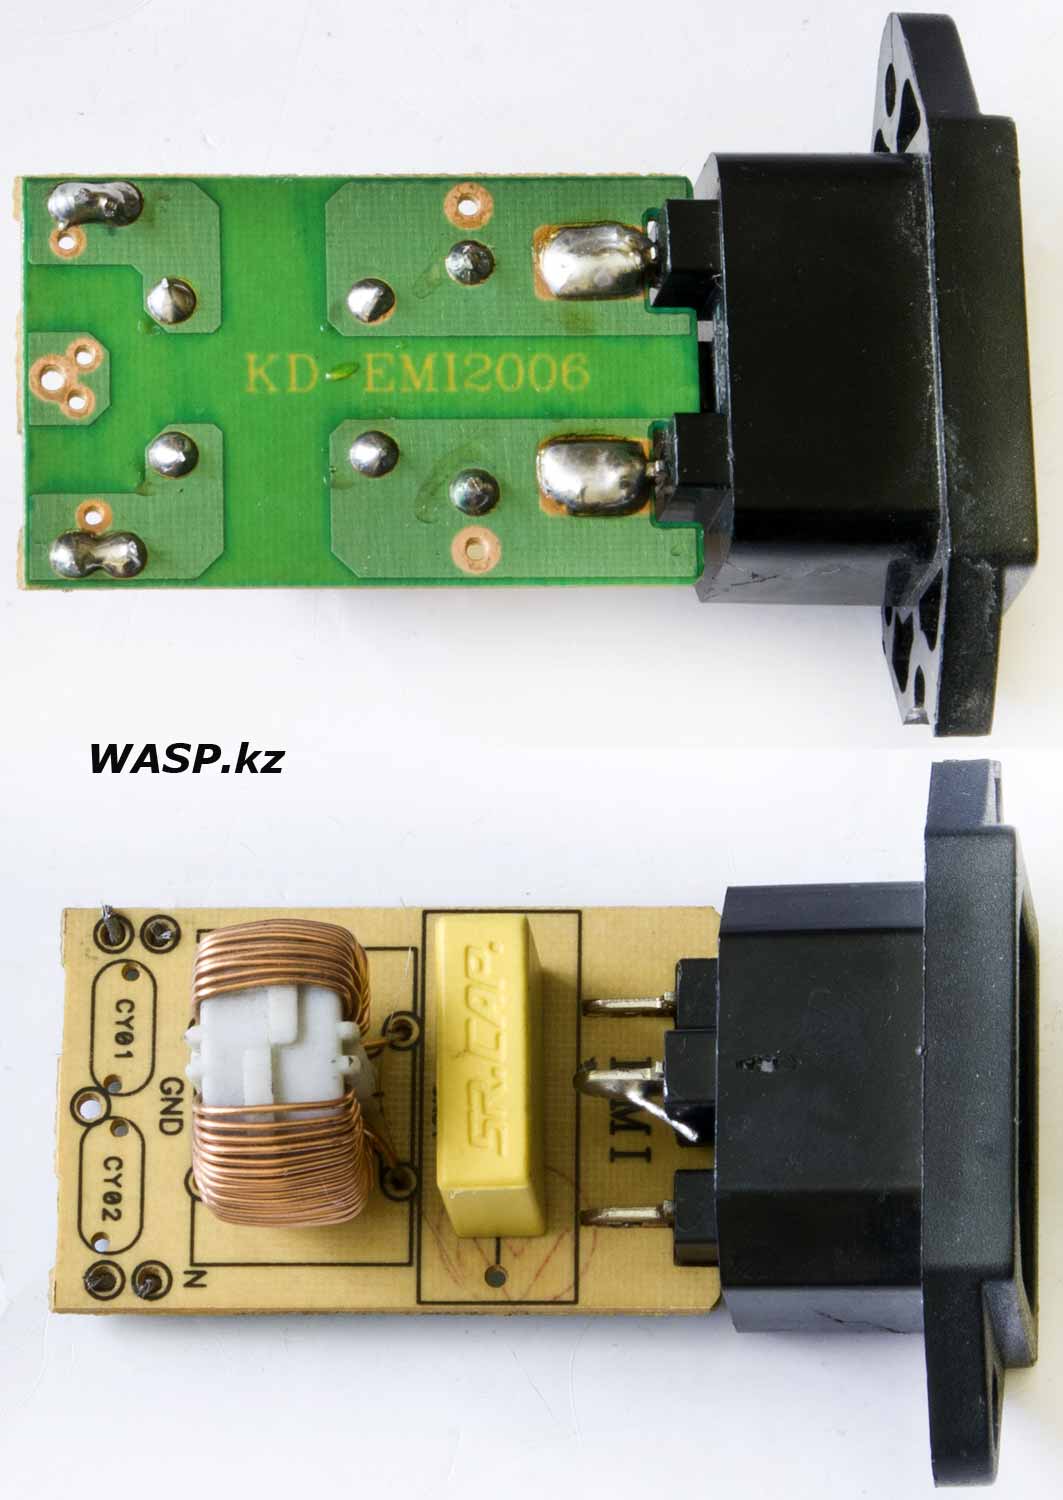 входной фильтр A&W ATX-550WP4 блока питания